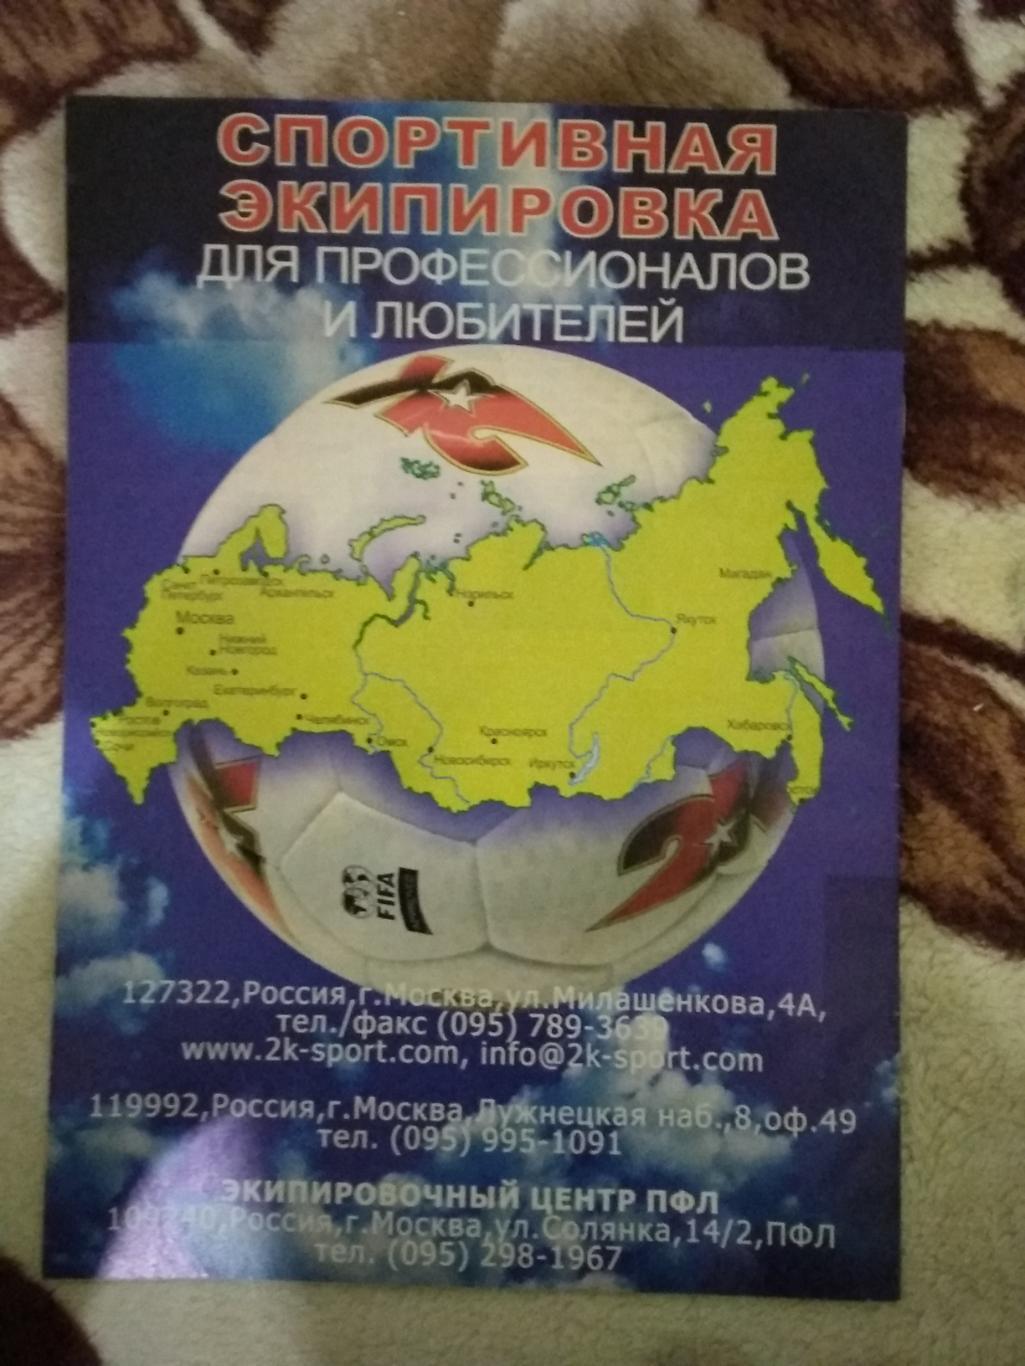 Журнал.Мой футбол №23 2004 г. (Чемпионат Европы) (постер). 2